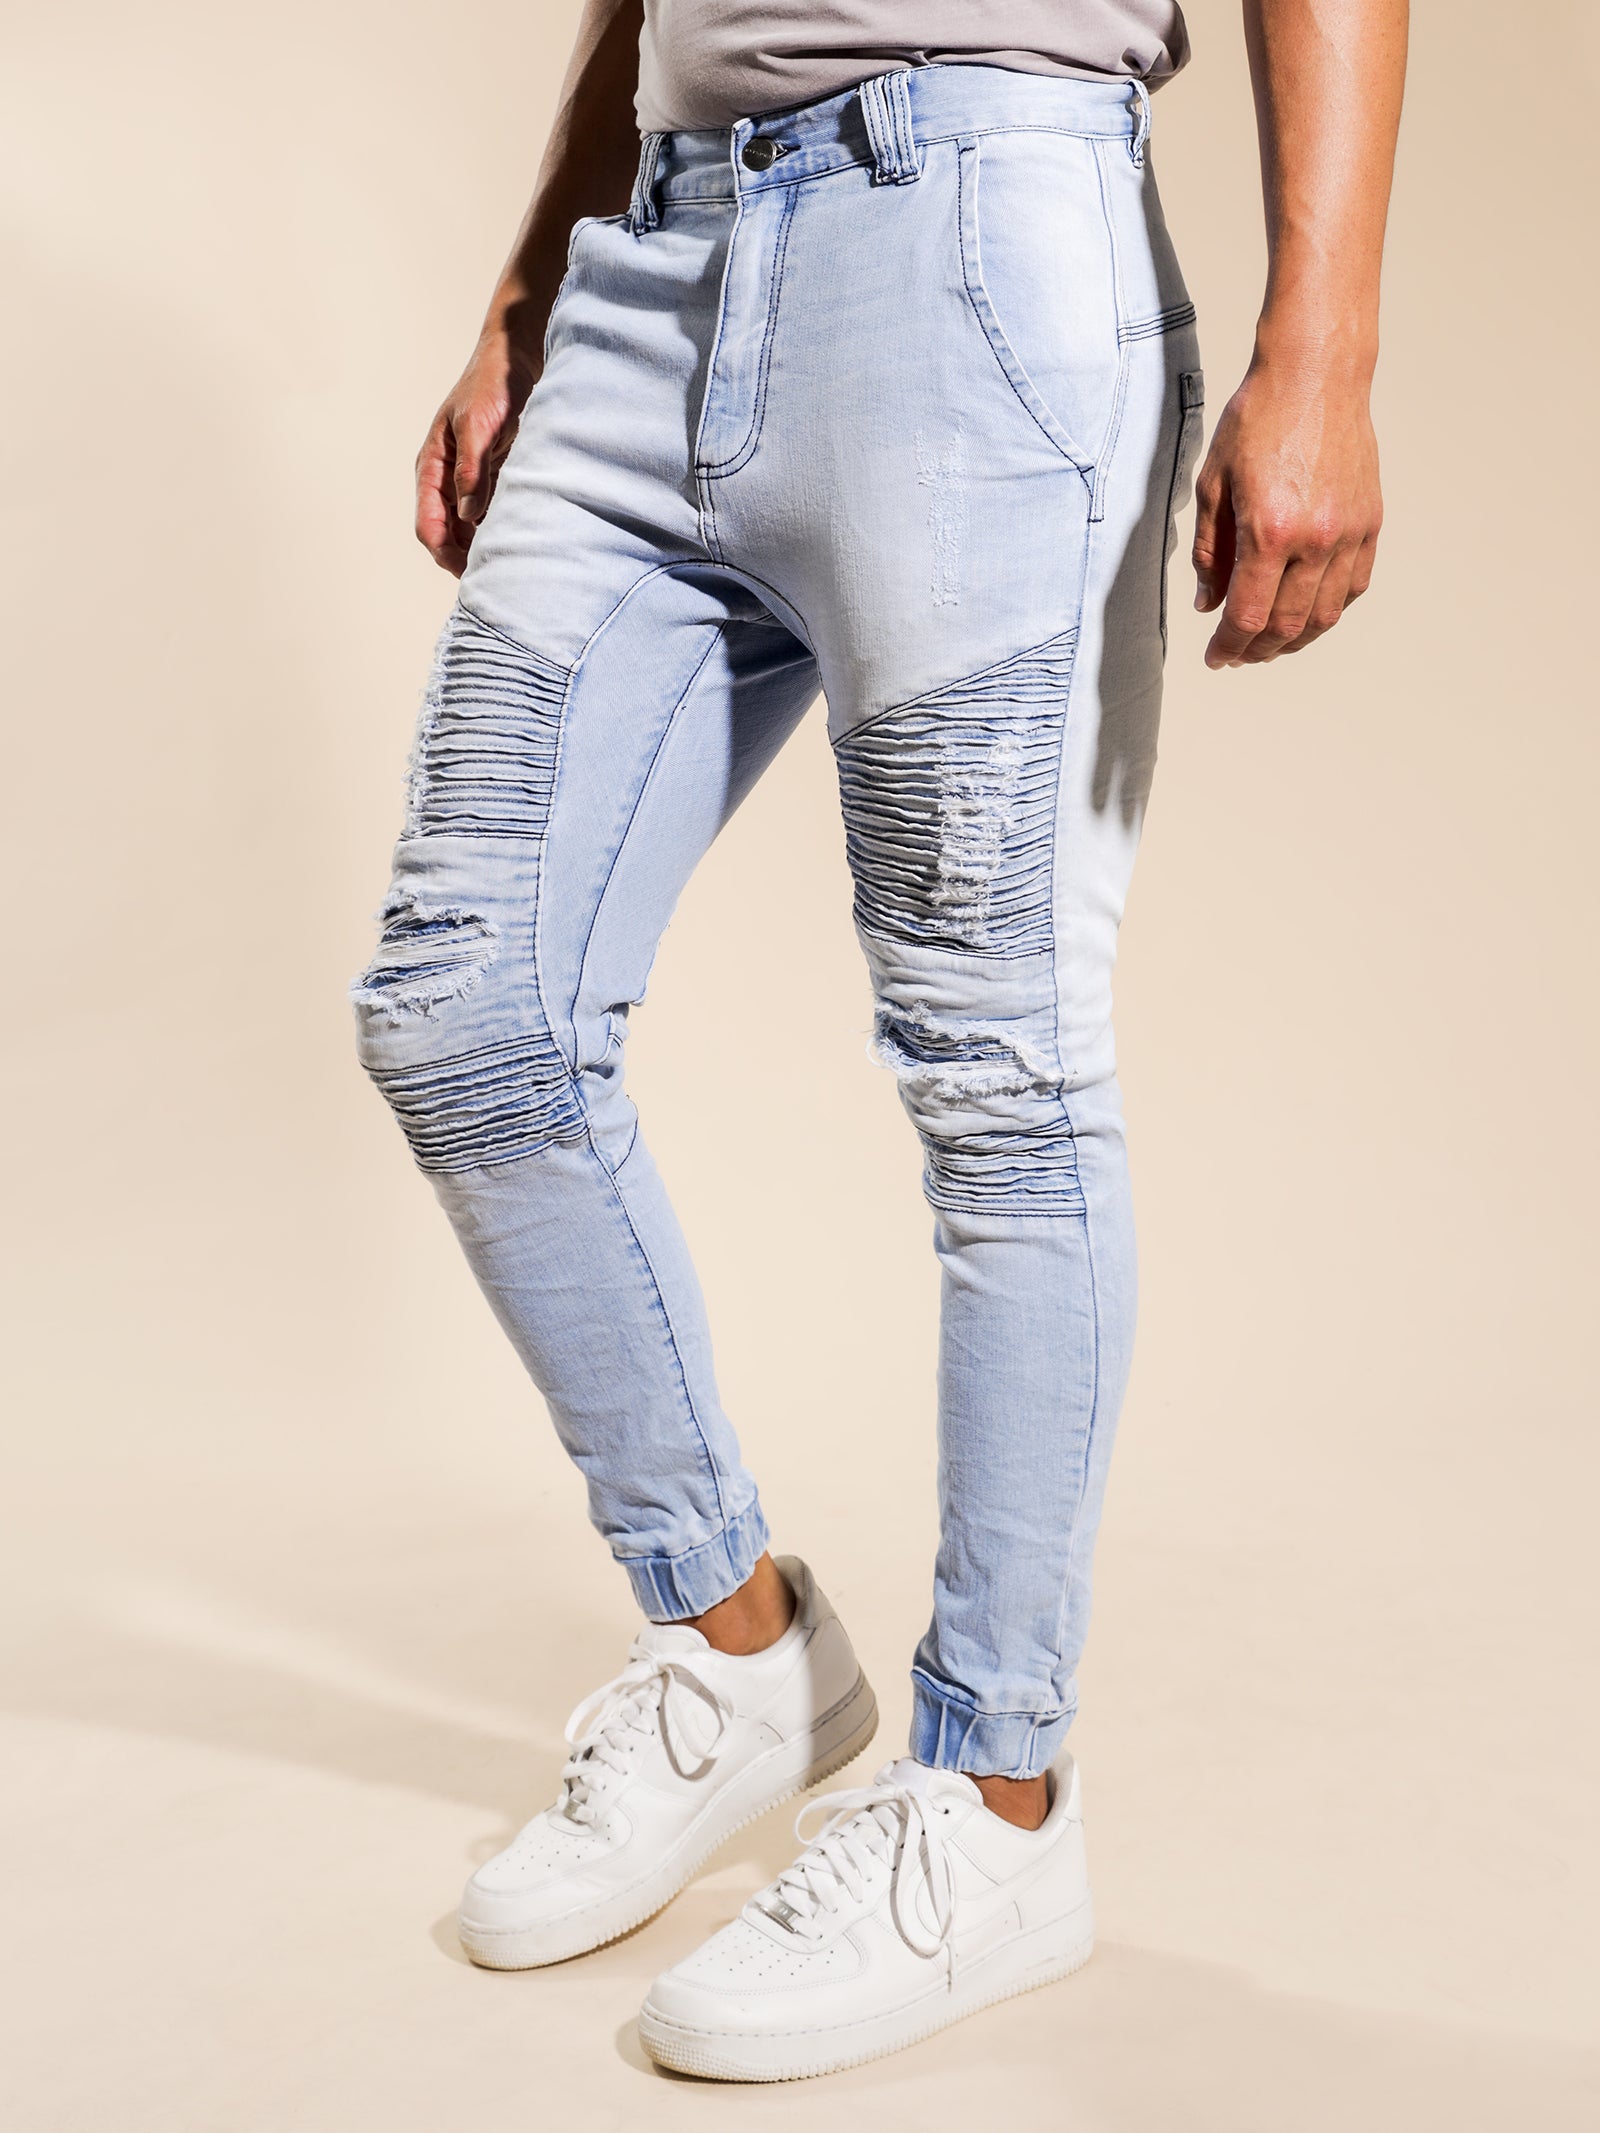 Hellcat Tight Tapered Jeans in Alaskan Blue Denim - Glue Store